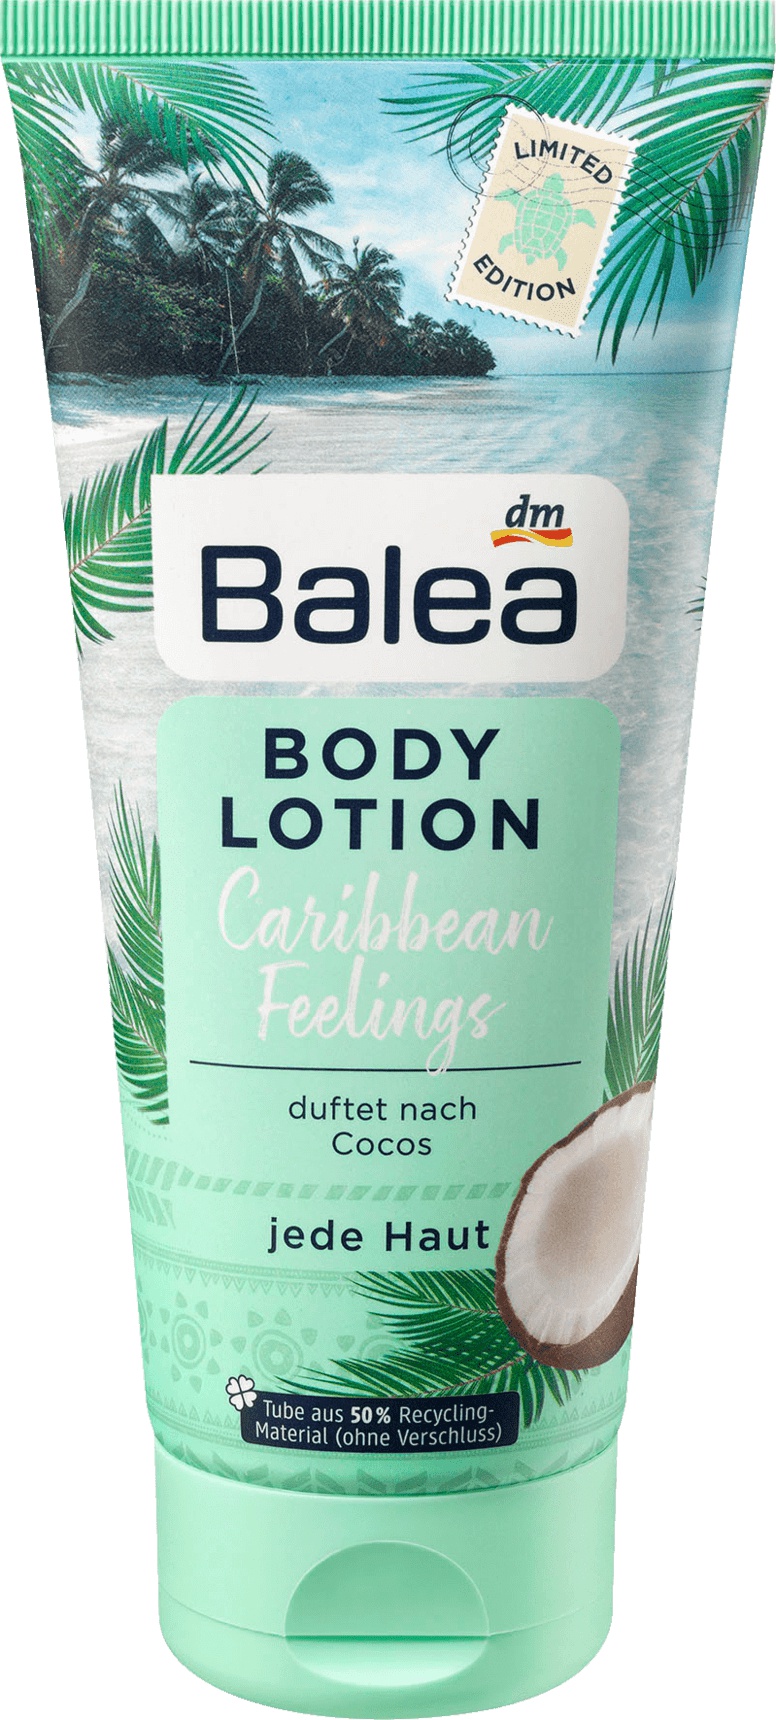 Balea Body Lotion Carribean Feelings